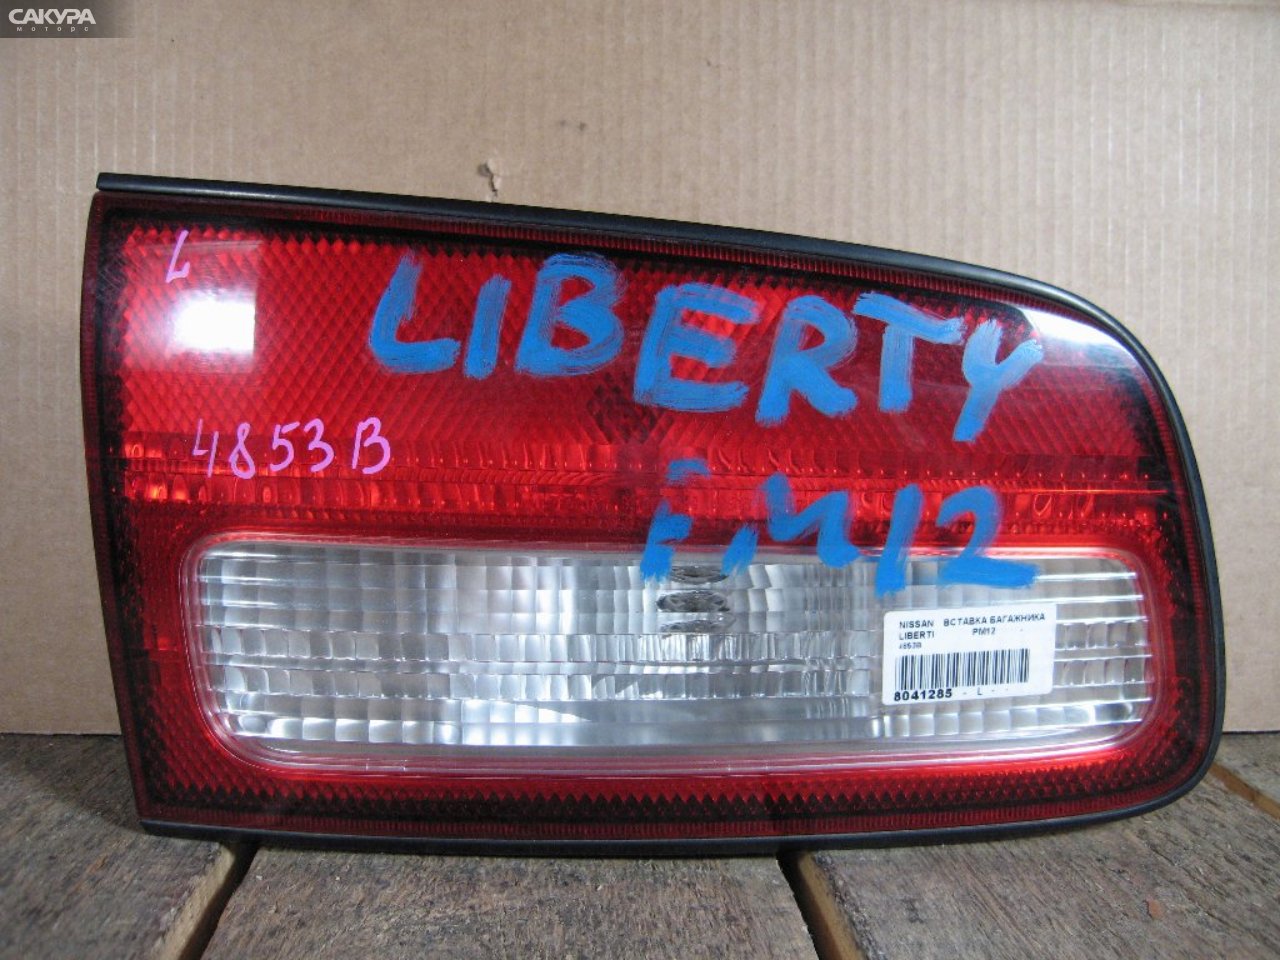 Фонарь вставка багажника левый Nissan Liberty PM12 4853B: купить в Сакура Абакан.